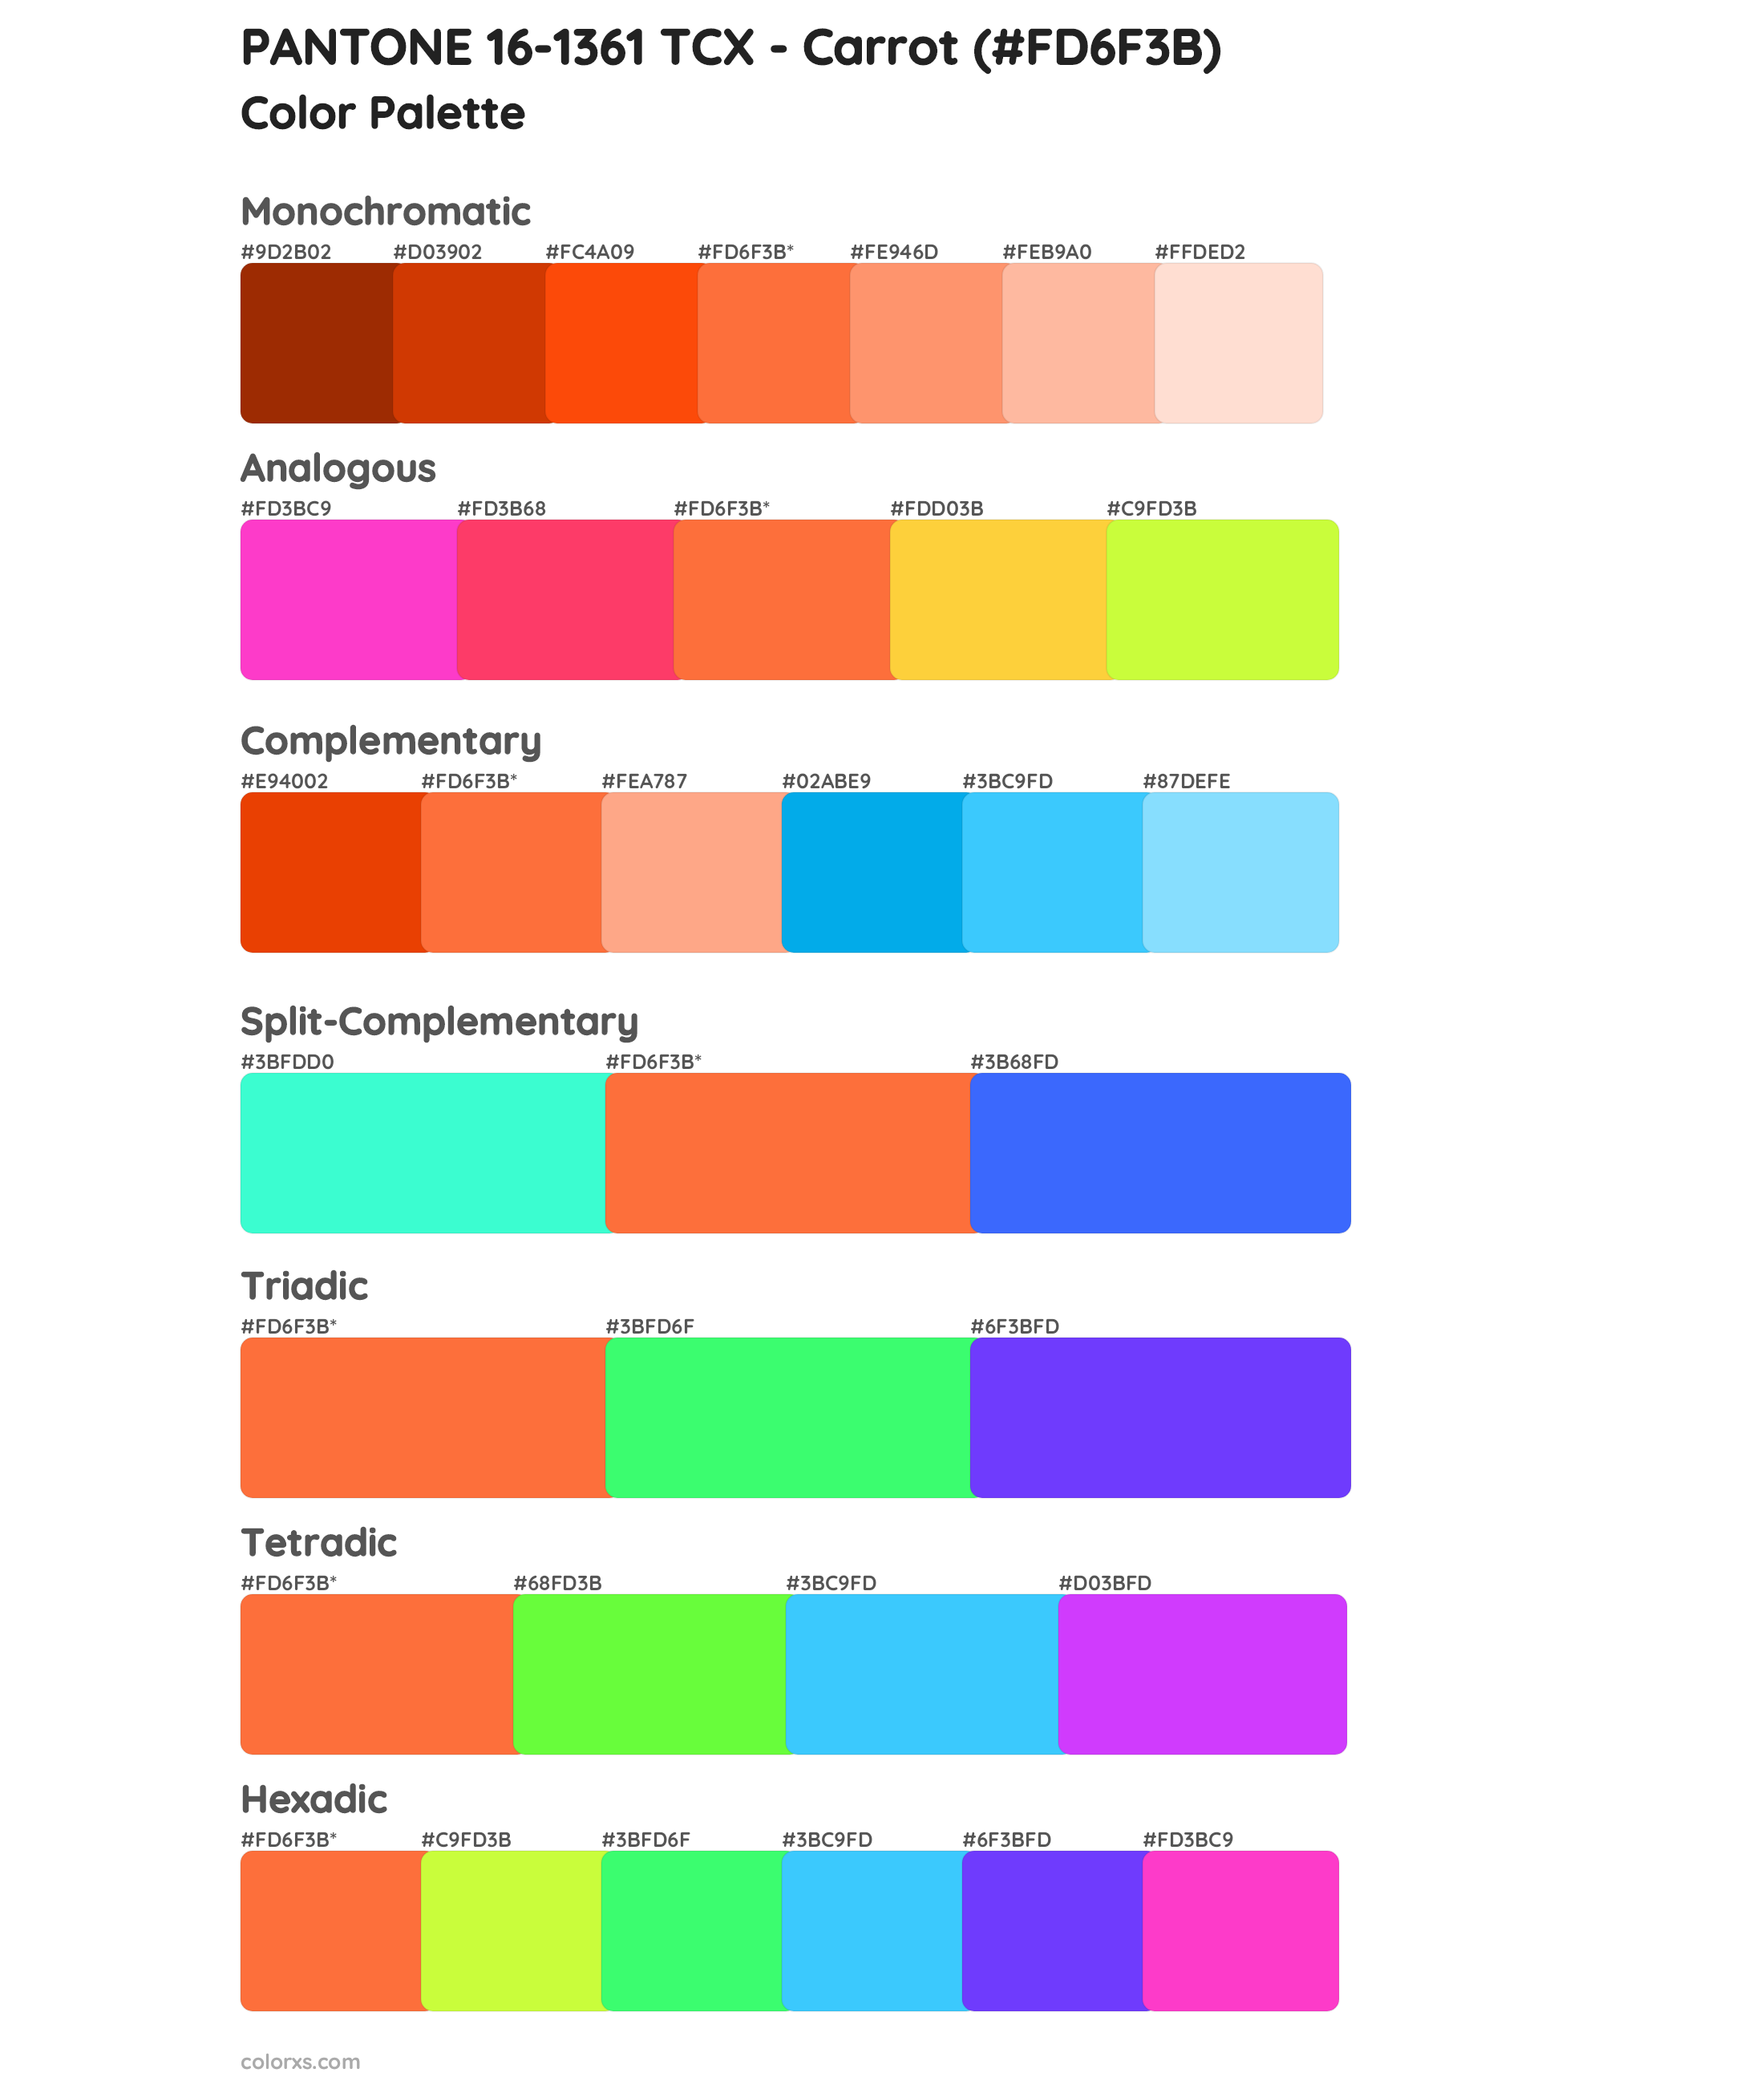 PANTONE 16-1361 TCX - Carrot Color Scheme Palettes